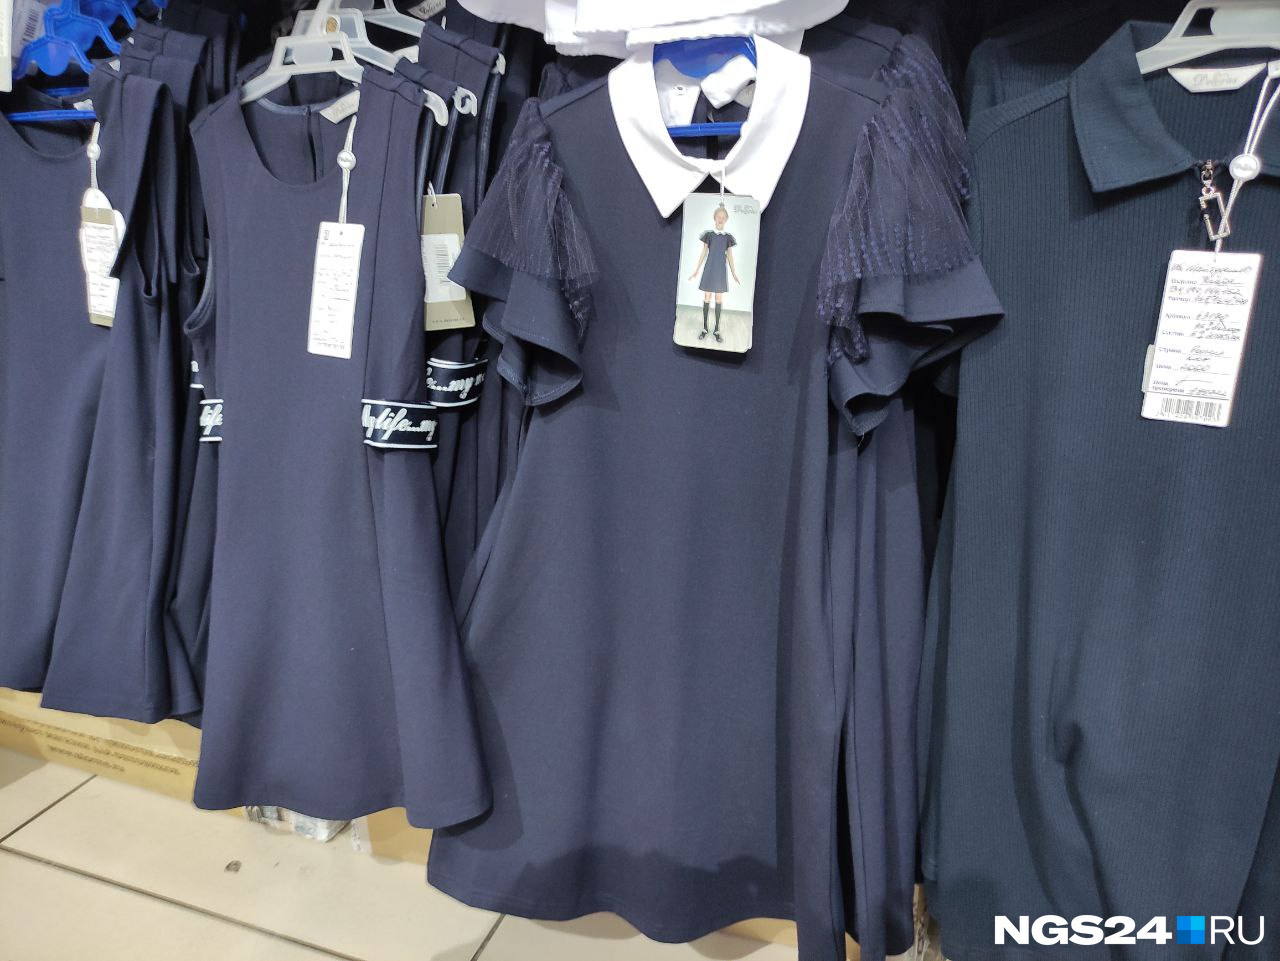 В этом году дирекция магазина подыскивала марки одежды подешевле, но цены всё равно пришлось поднять